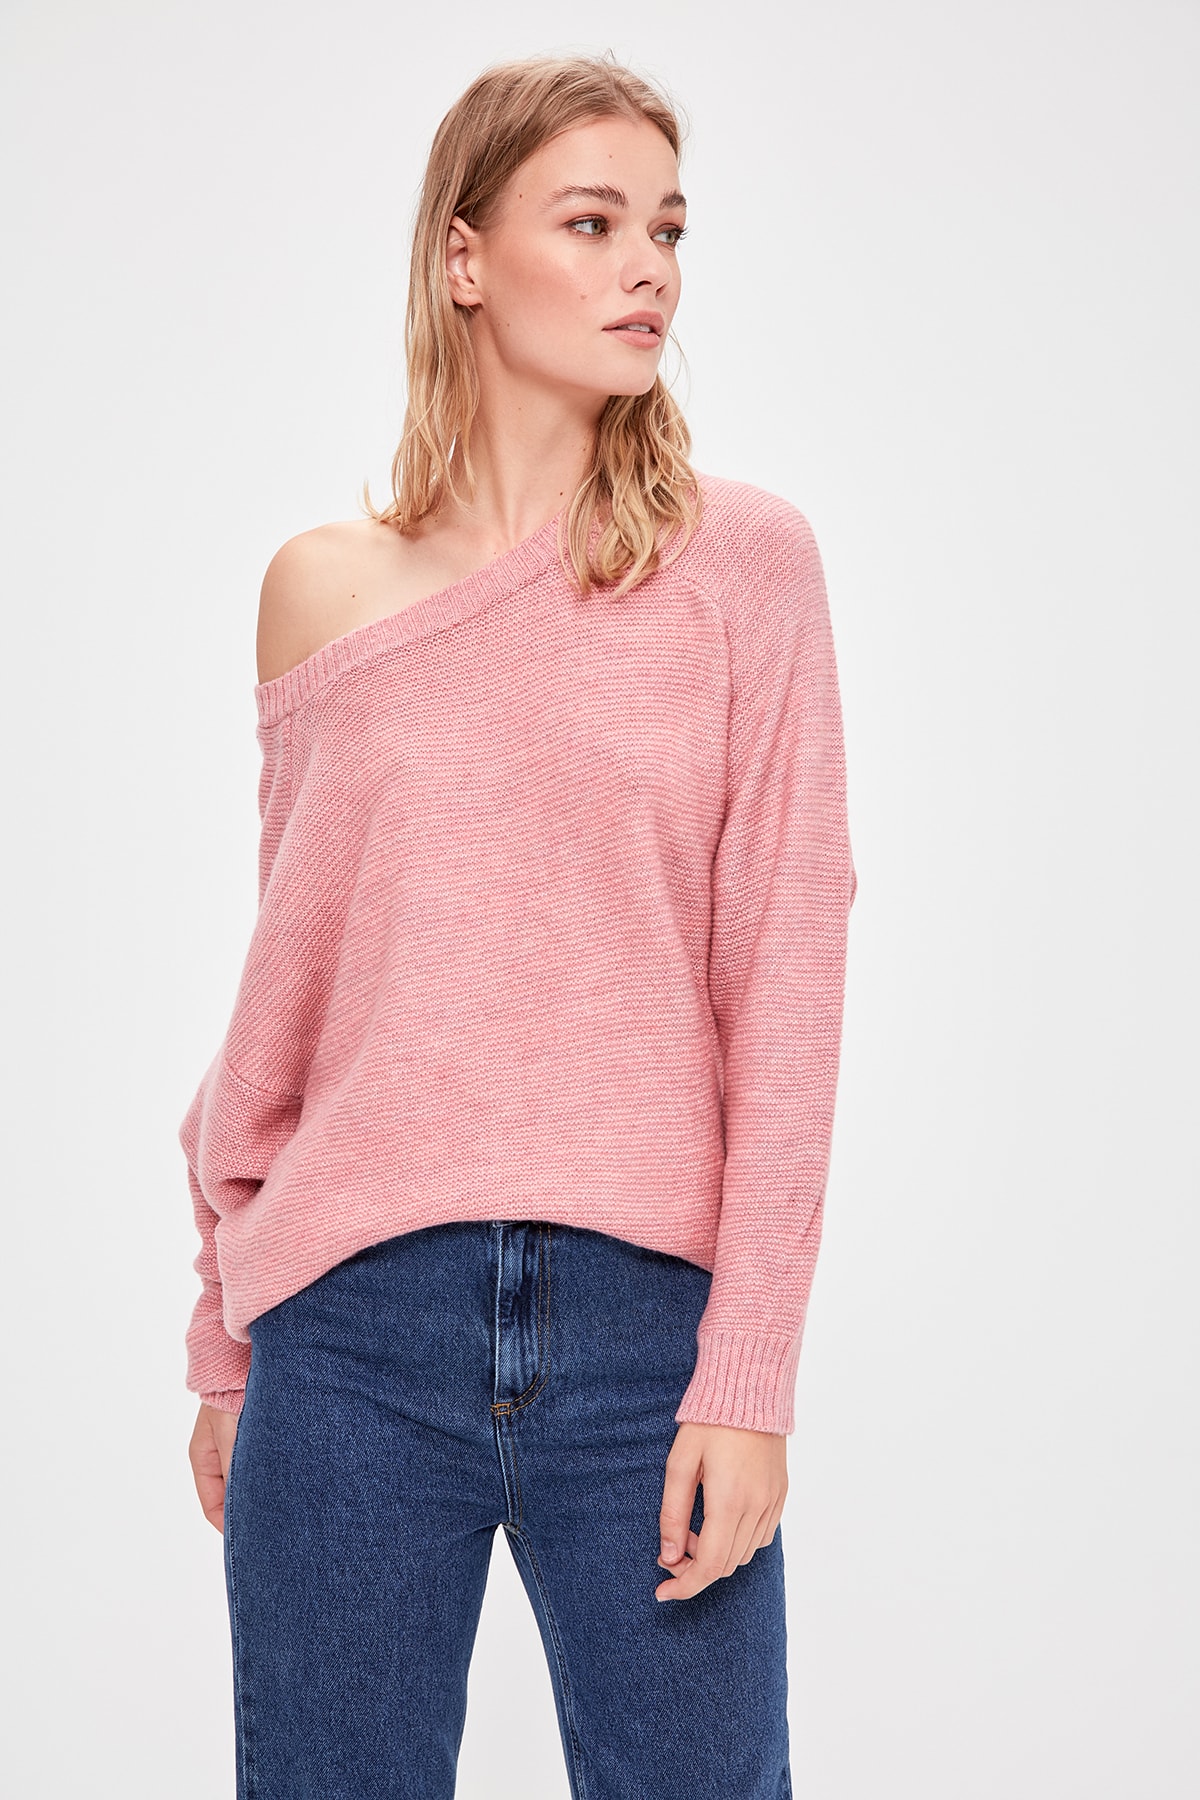 Trendyol Pink Asymmetric Knitwear Sweater